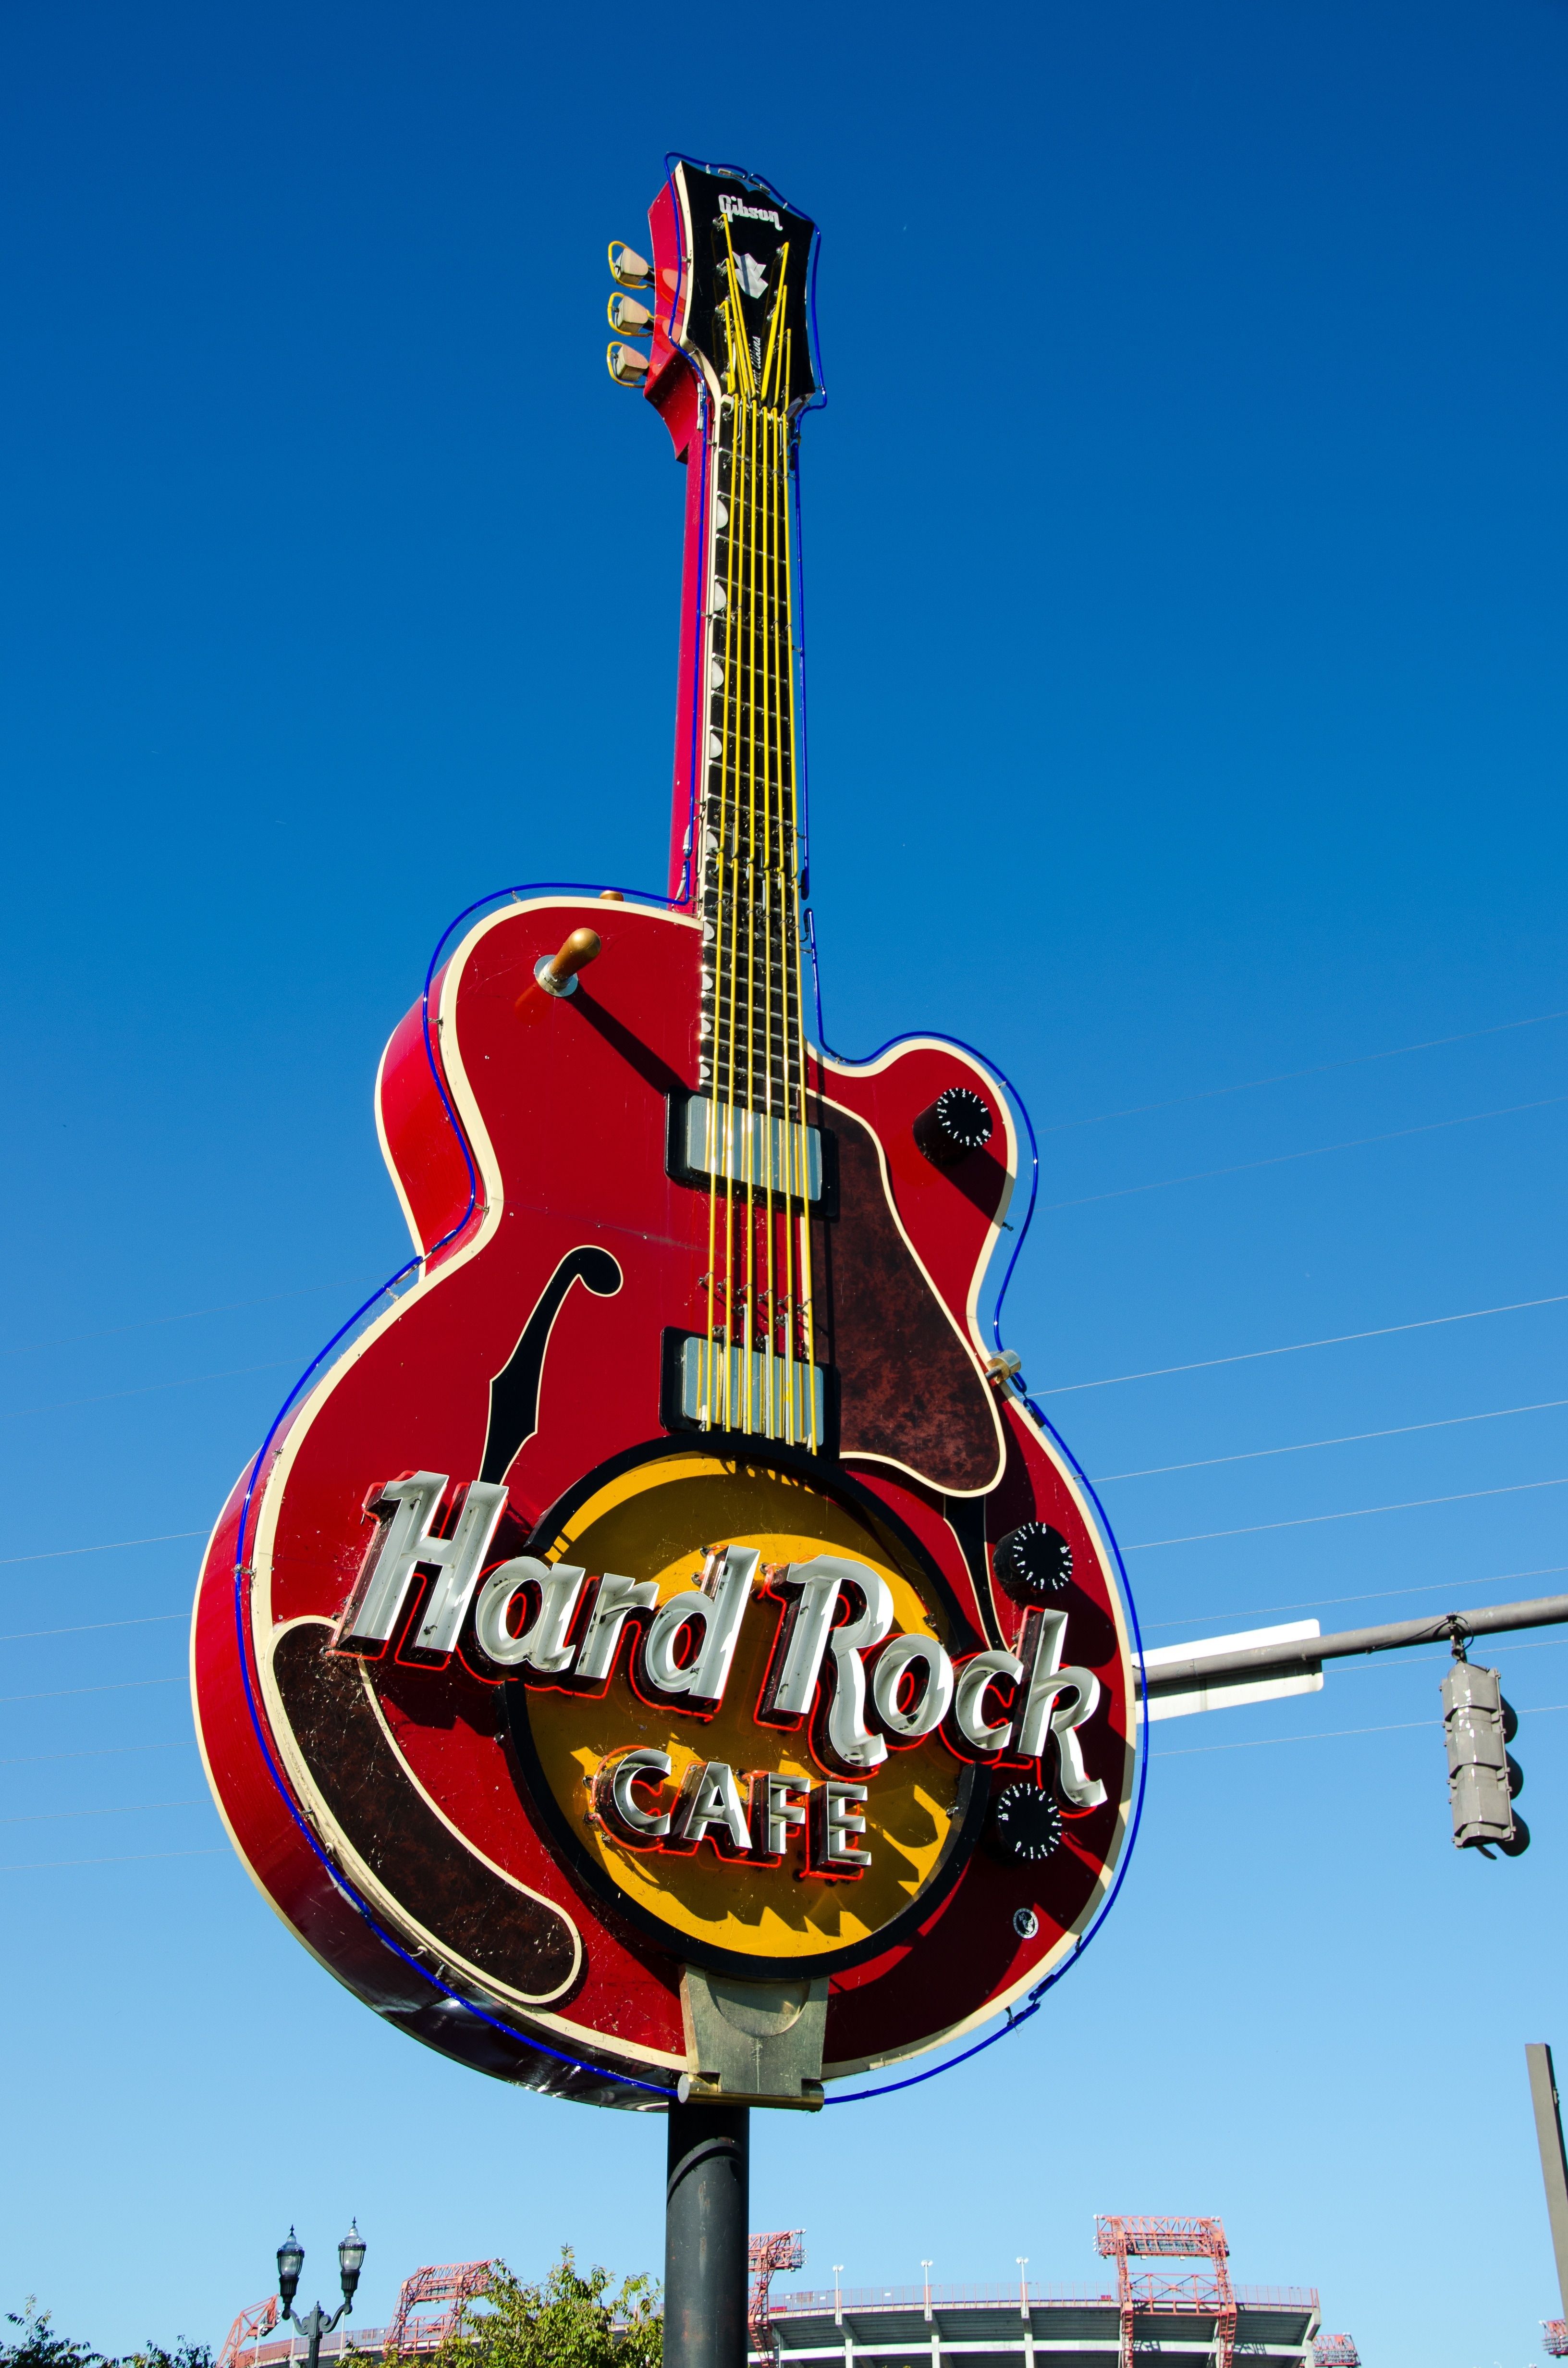 hard rock cafe signage free image